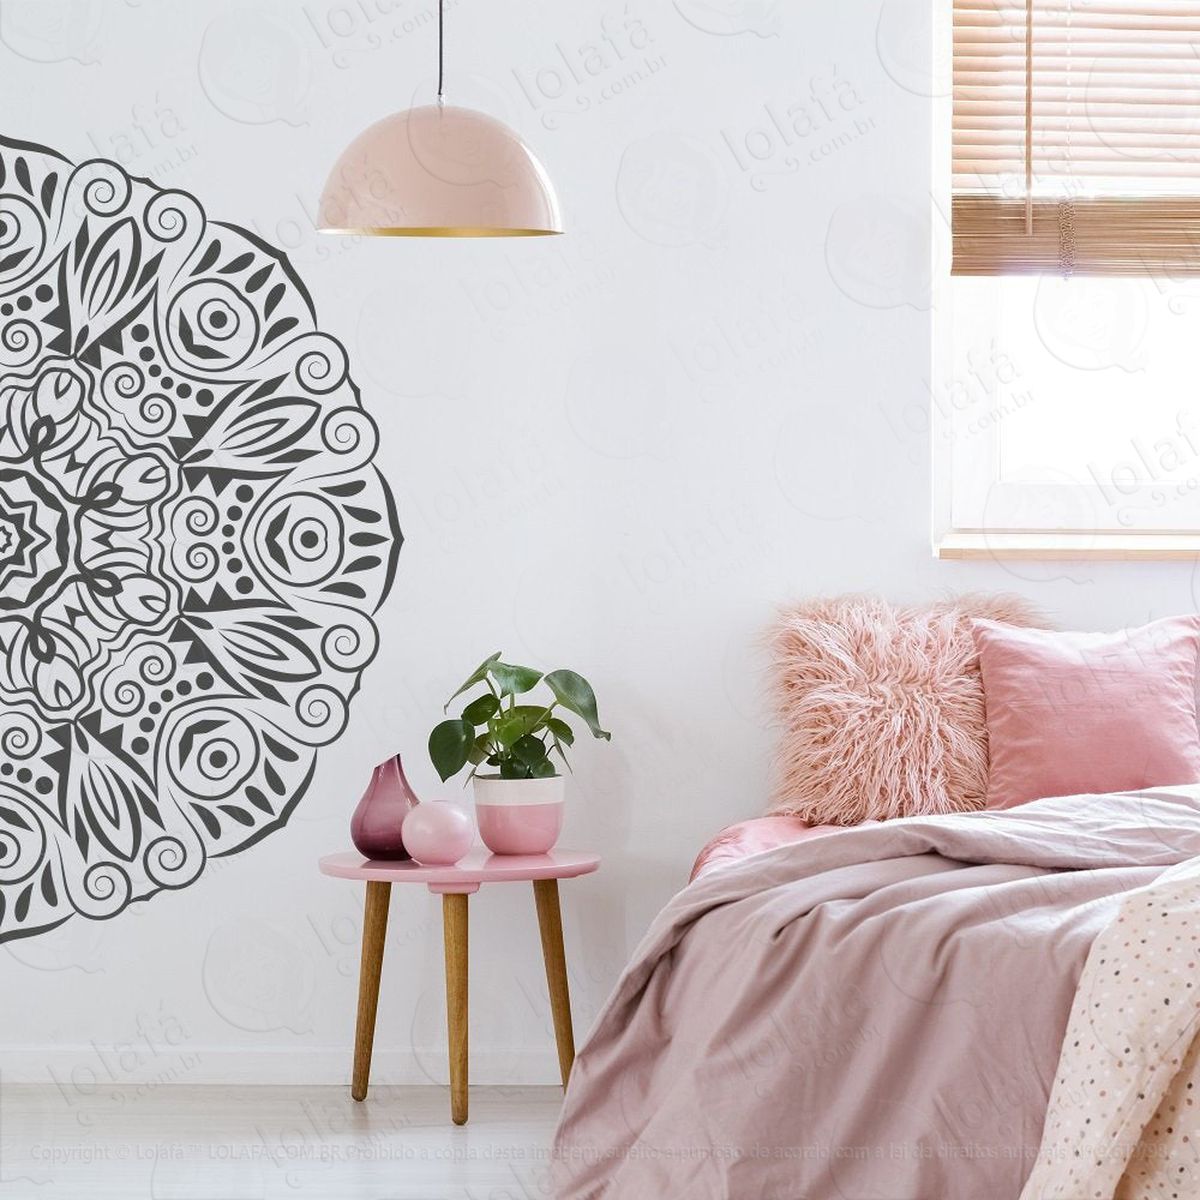 mandala para cultivar a simplicidade adesivo de parede decorativo para casa, quarto, sala e vidro - mod:406